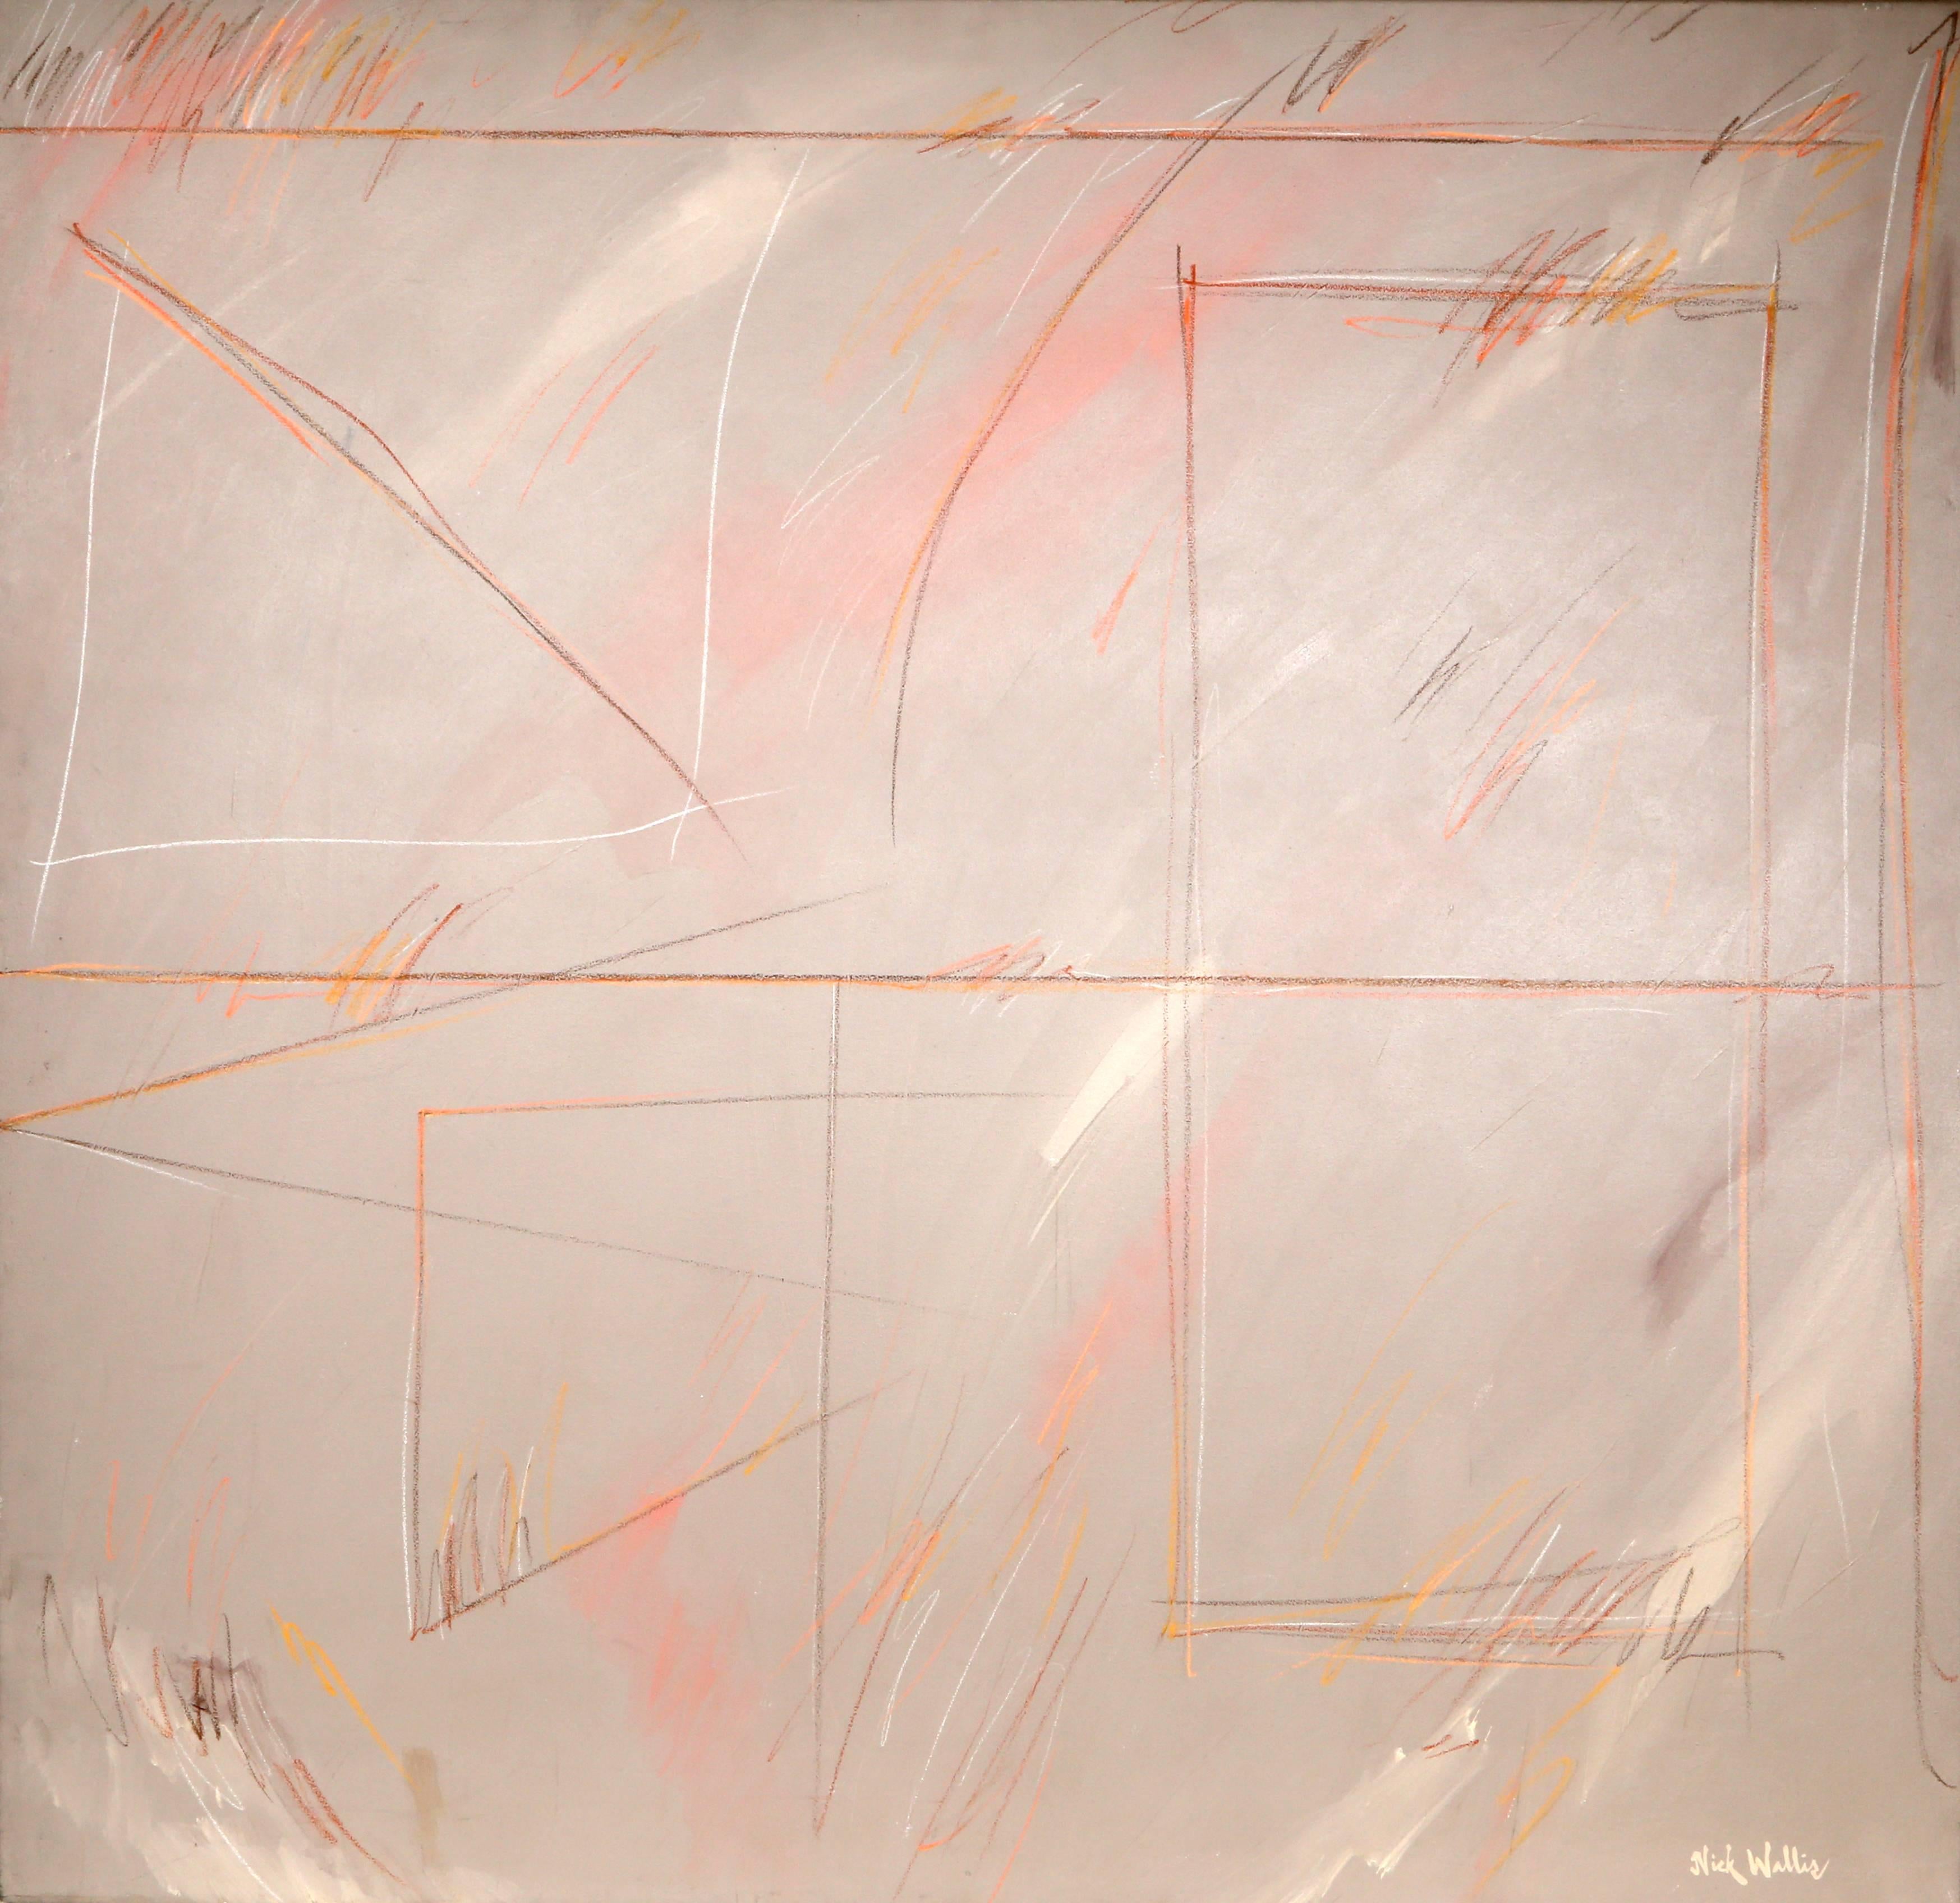 Artiste : Nick Wallis
Titre : Plus de pensées après coup 4
Année : vers 1980
Moyen : Acrylique sur toile, signé
Taille : 60 x 60 pouces (152,4 x 152,4 cm)